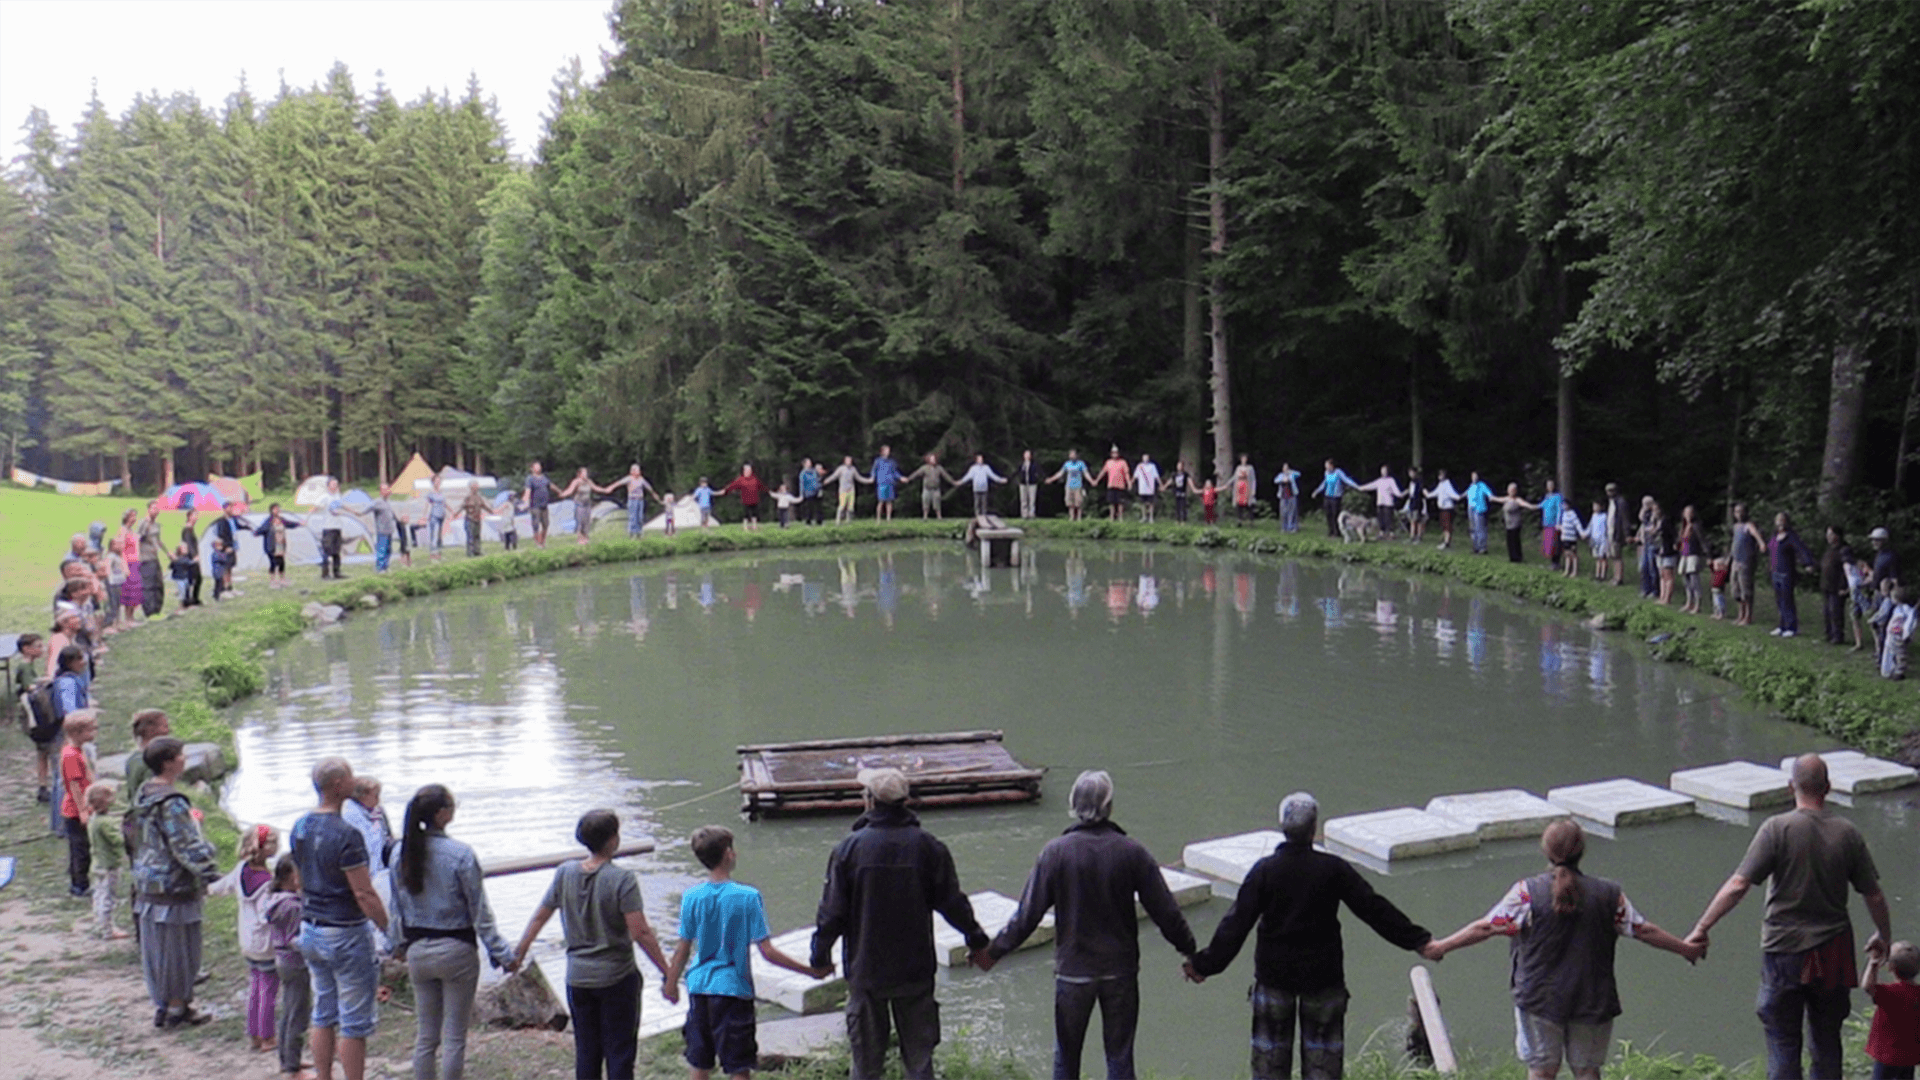 Über 100 Menschen stehen im Kreis um einen Teich und reichen sich die Hände.